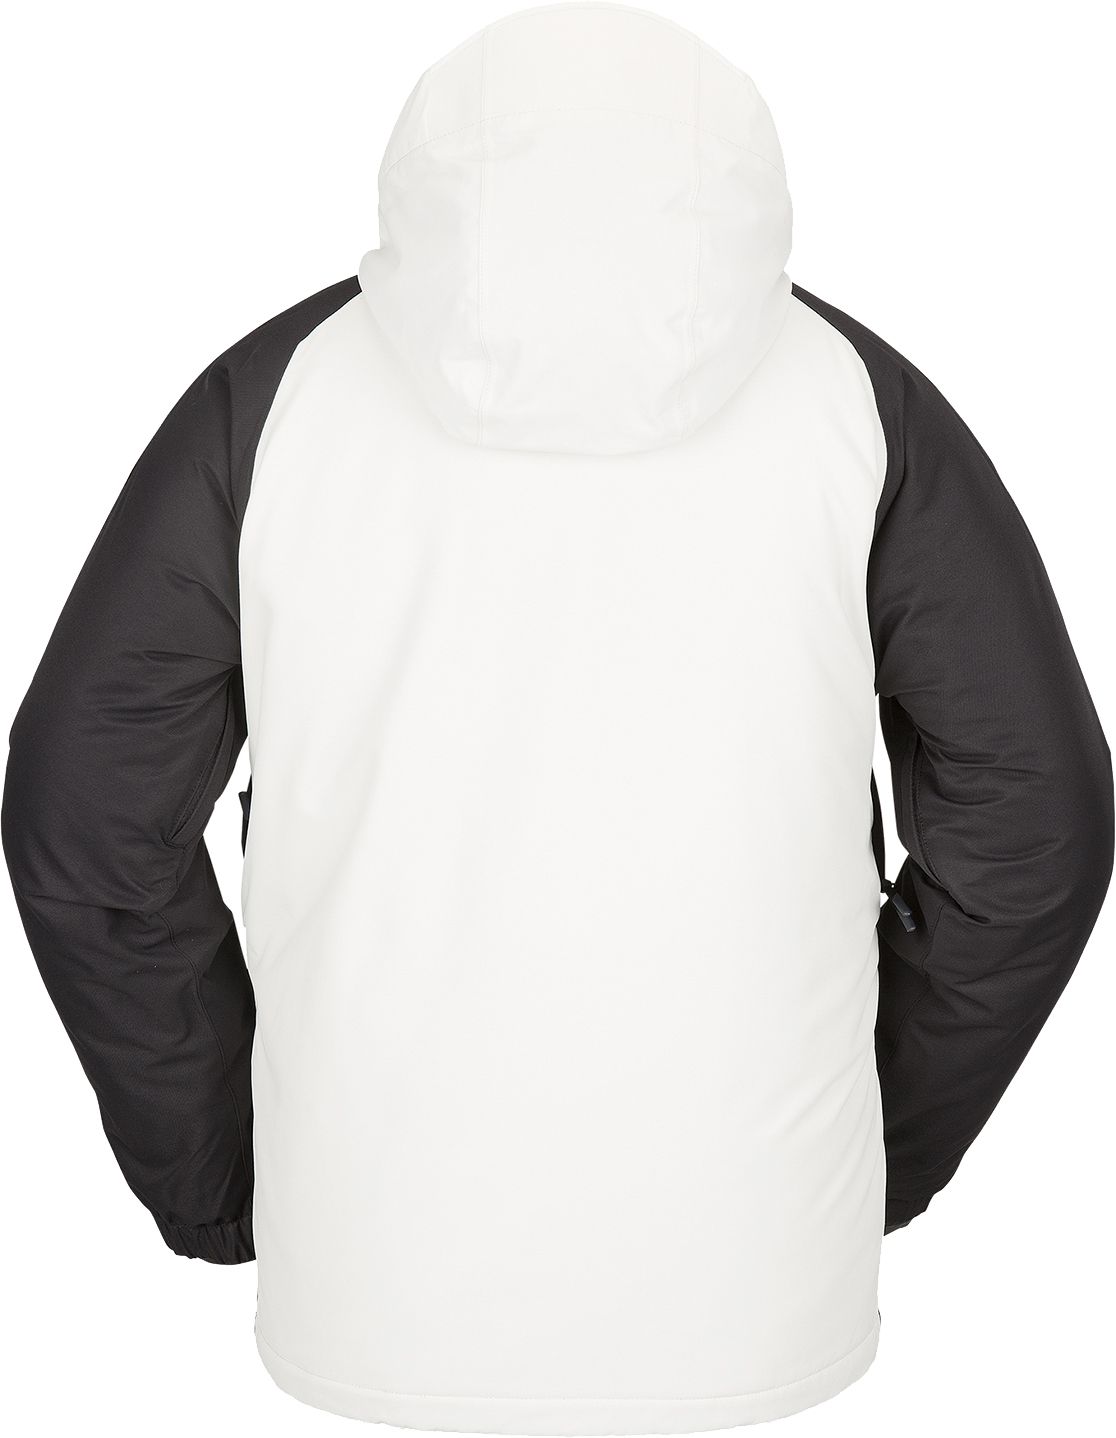 Veste de Snowboard Volcom Iconic Stone Jacket - Ice Green | HIVER 24 | Nouveaux produits | Produits les plus récents | Produits les plus vendus | surfdevils.com